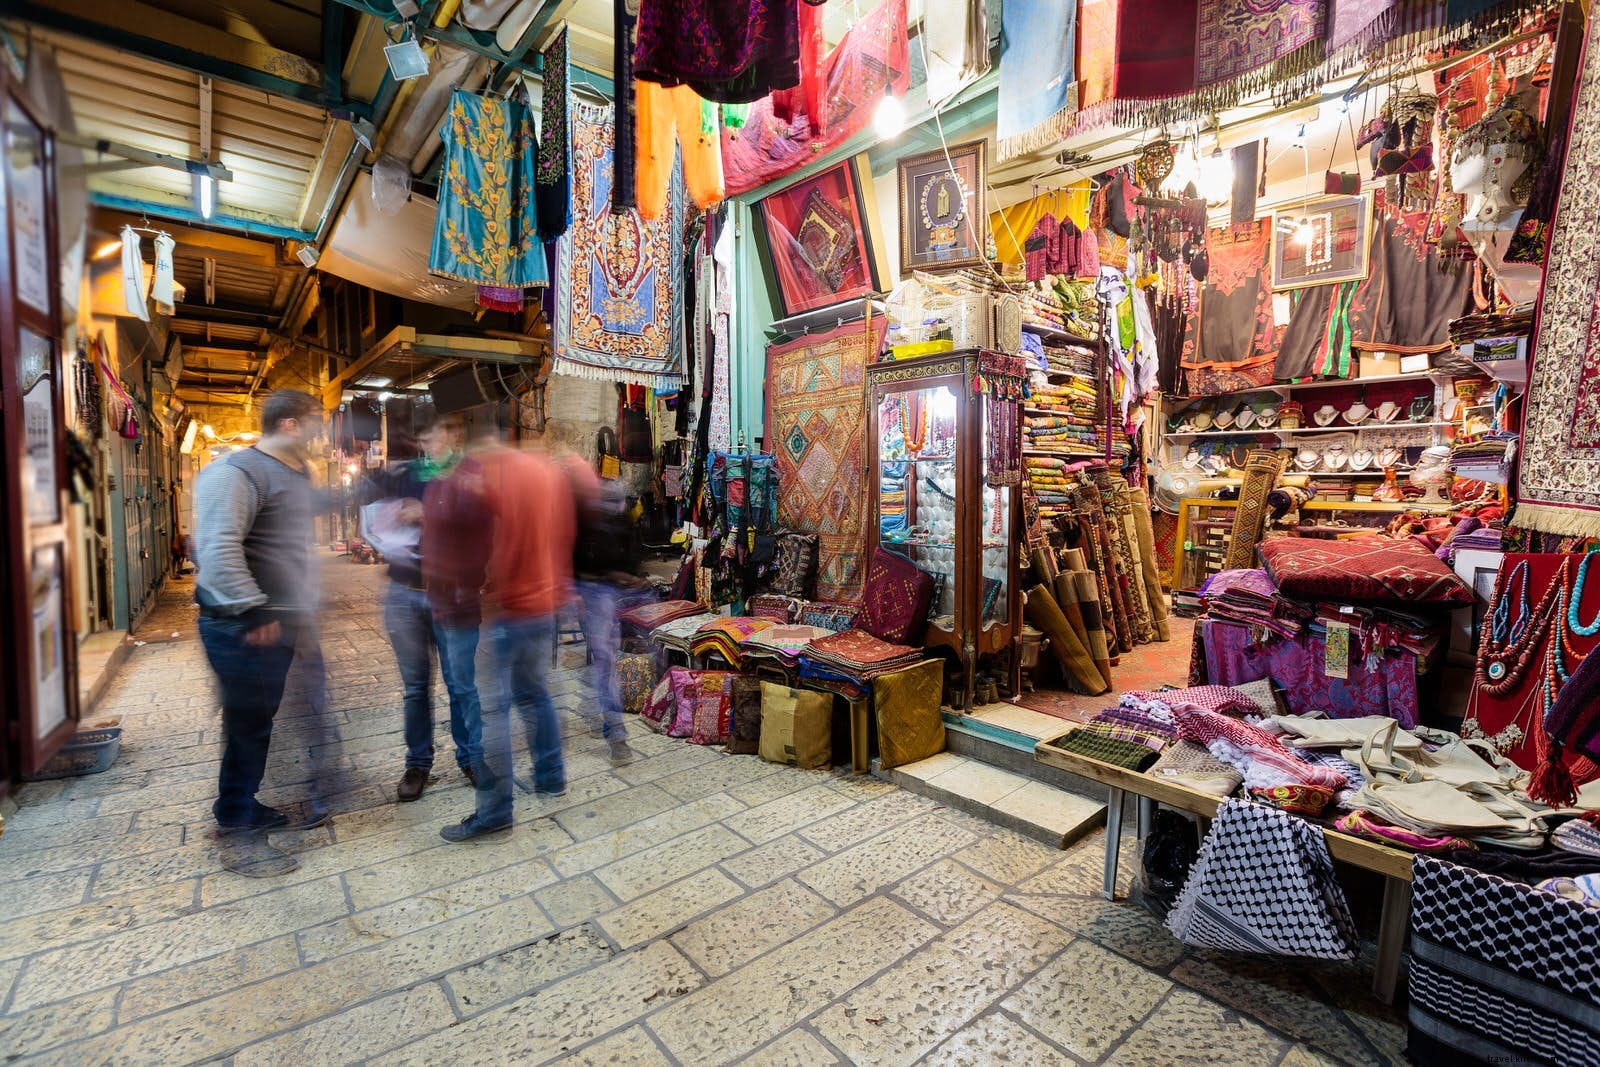 Gerusalemme per la prima volta:i migliori consigli per la tua prima visita alla Città Santa 